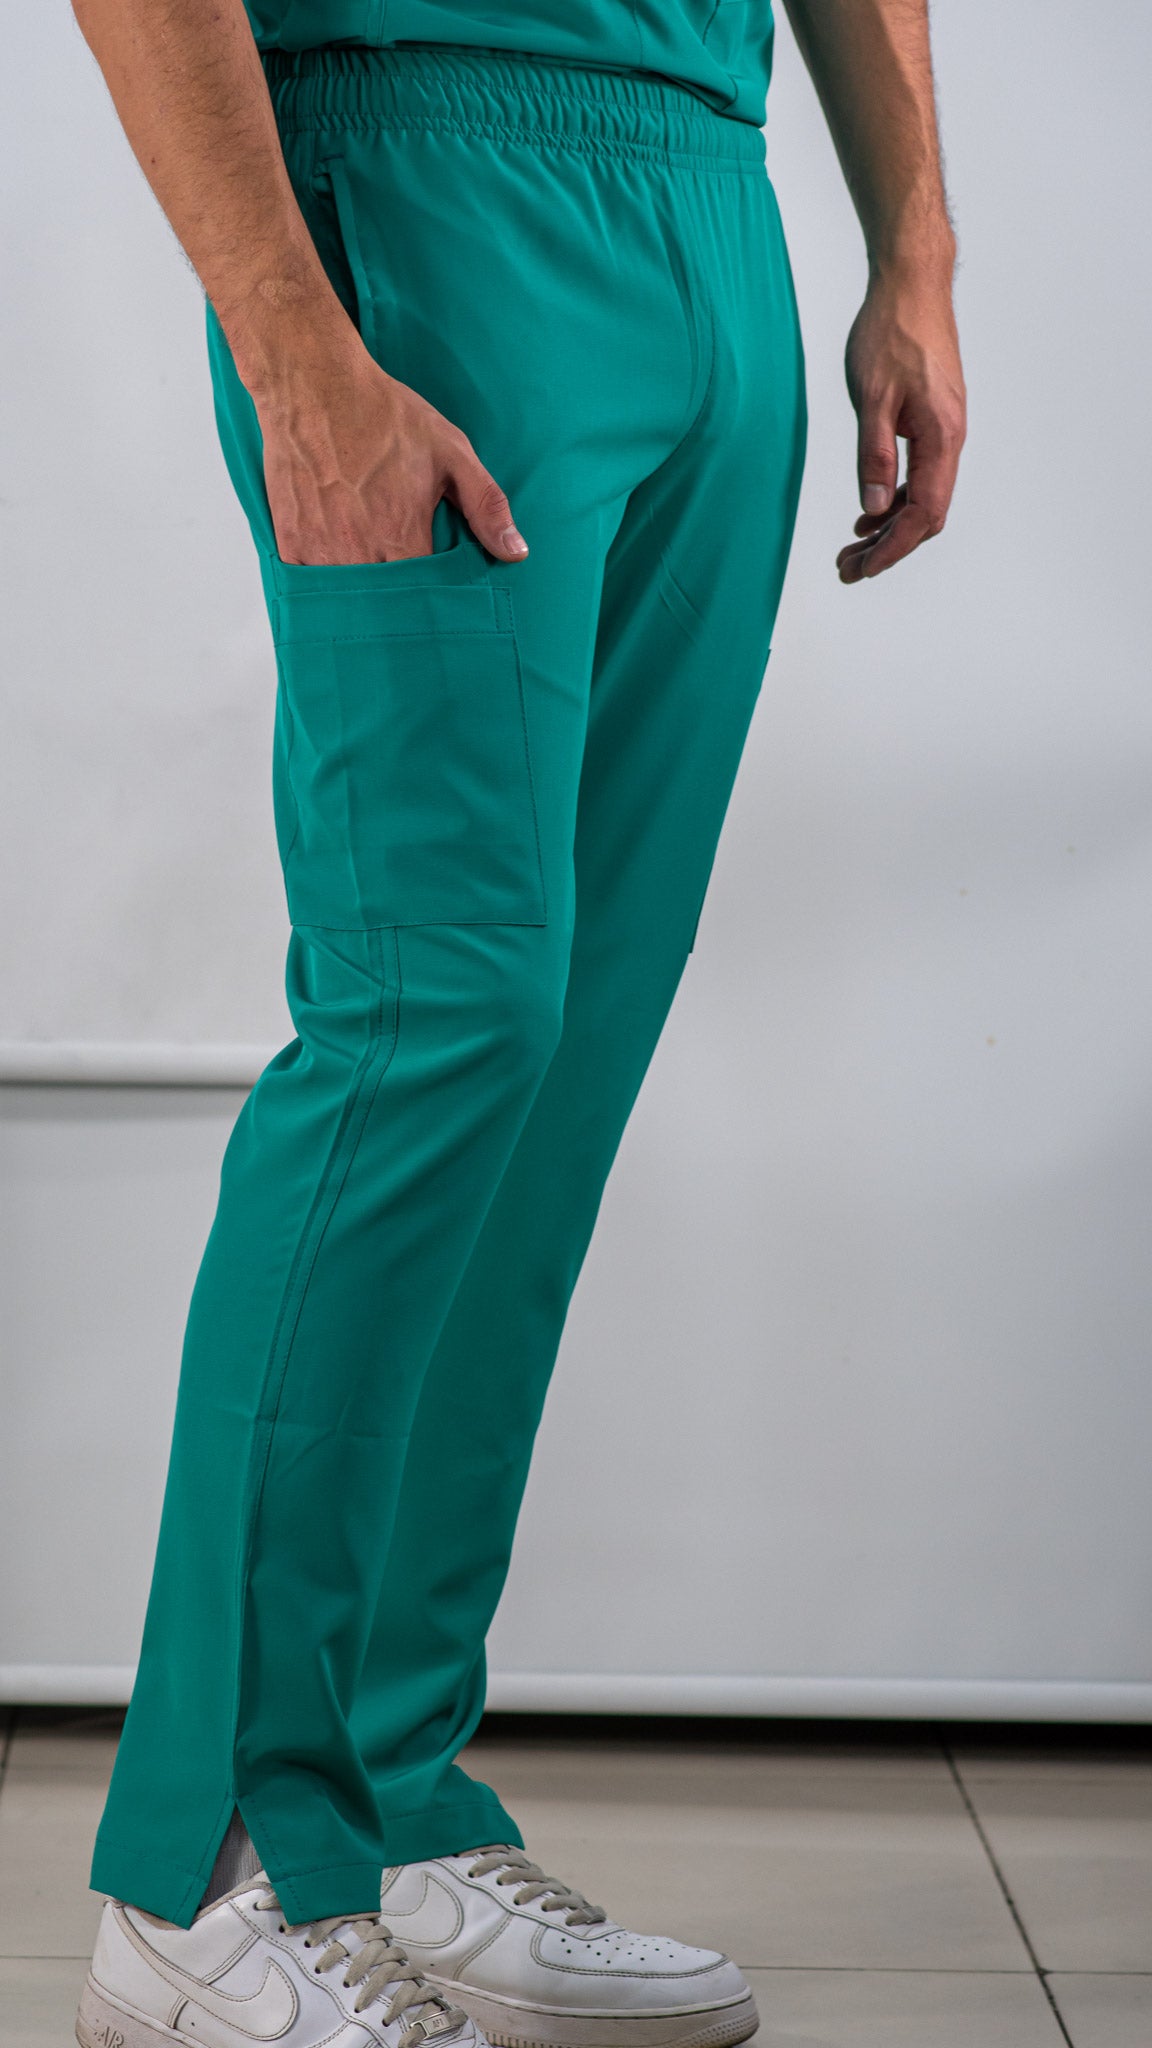 Pantalon Hombre Verde Jade 5 bolsas FW